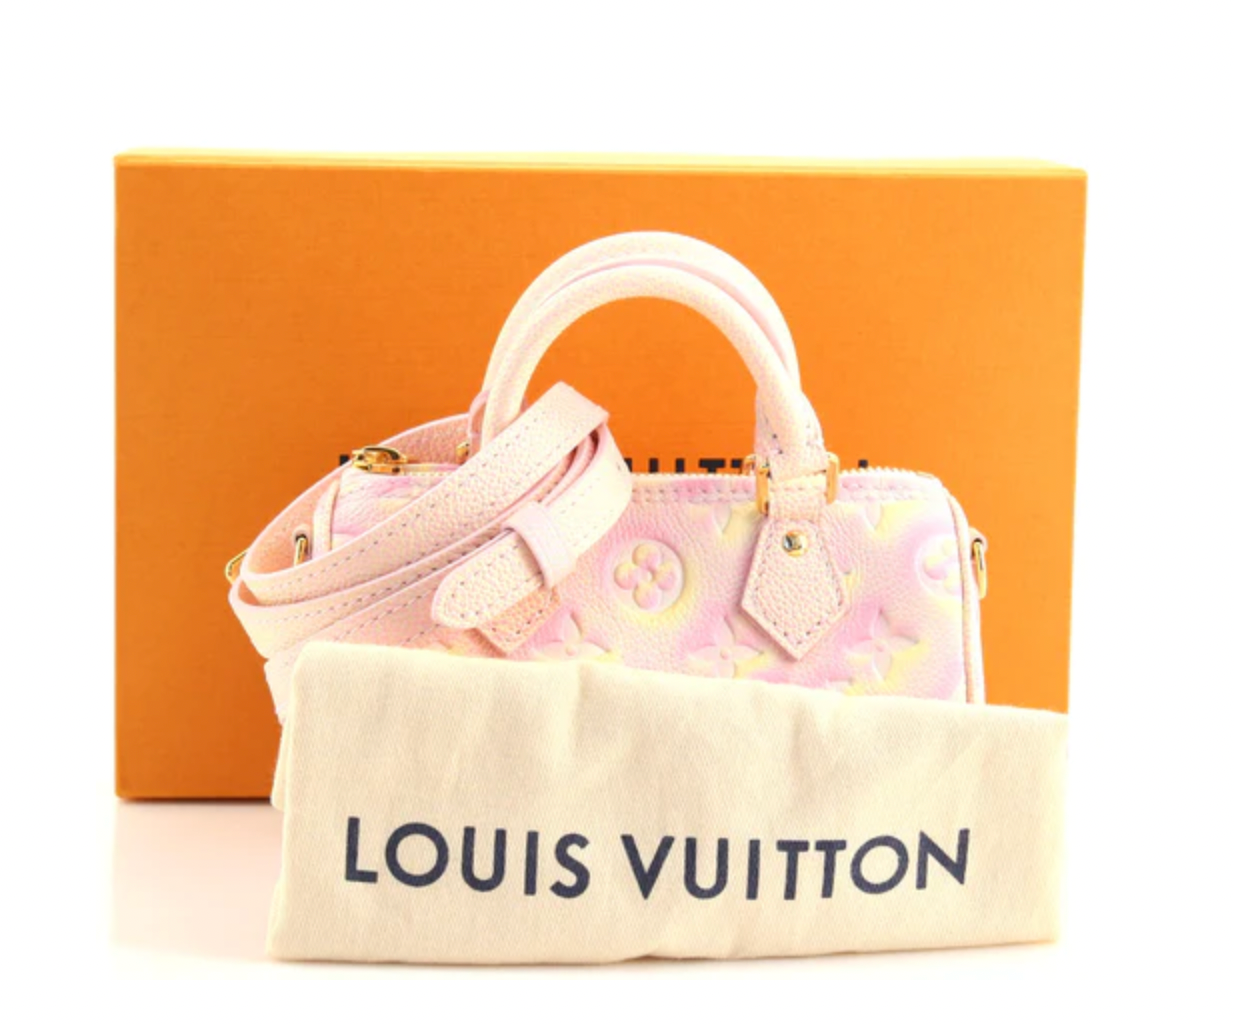 LIKE NEW) Louis Vuitton Stardust Monogram Empreinte Speedy